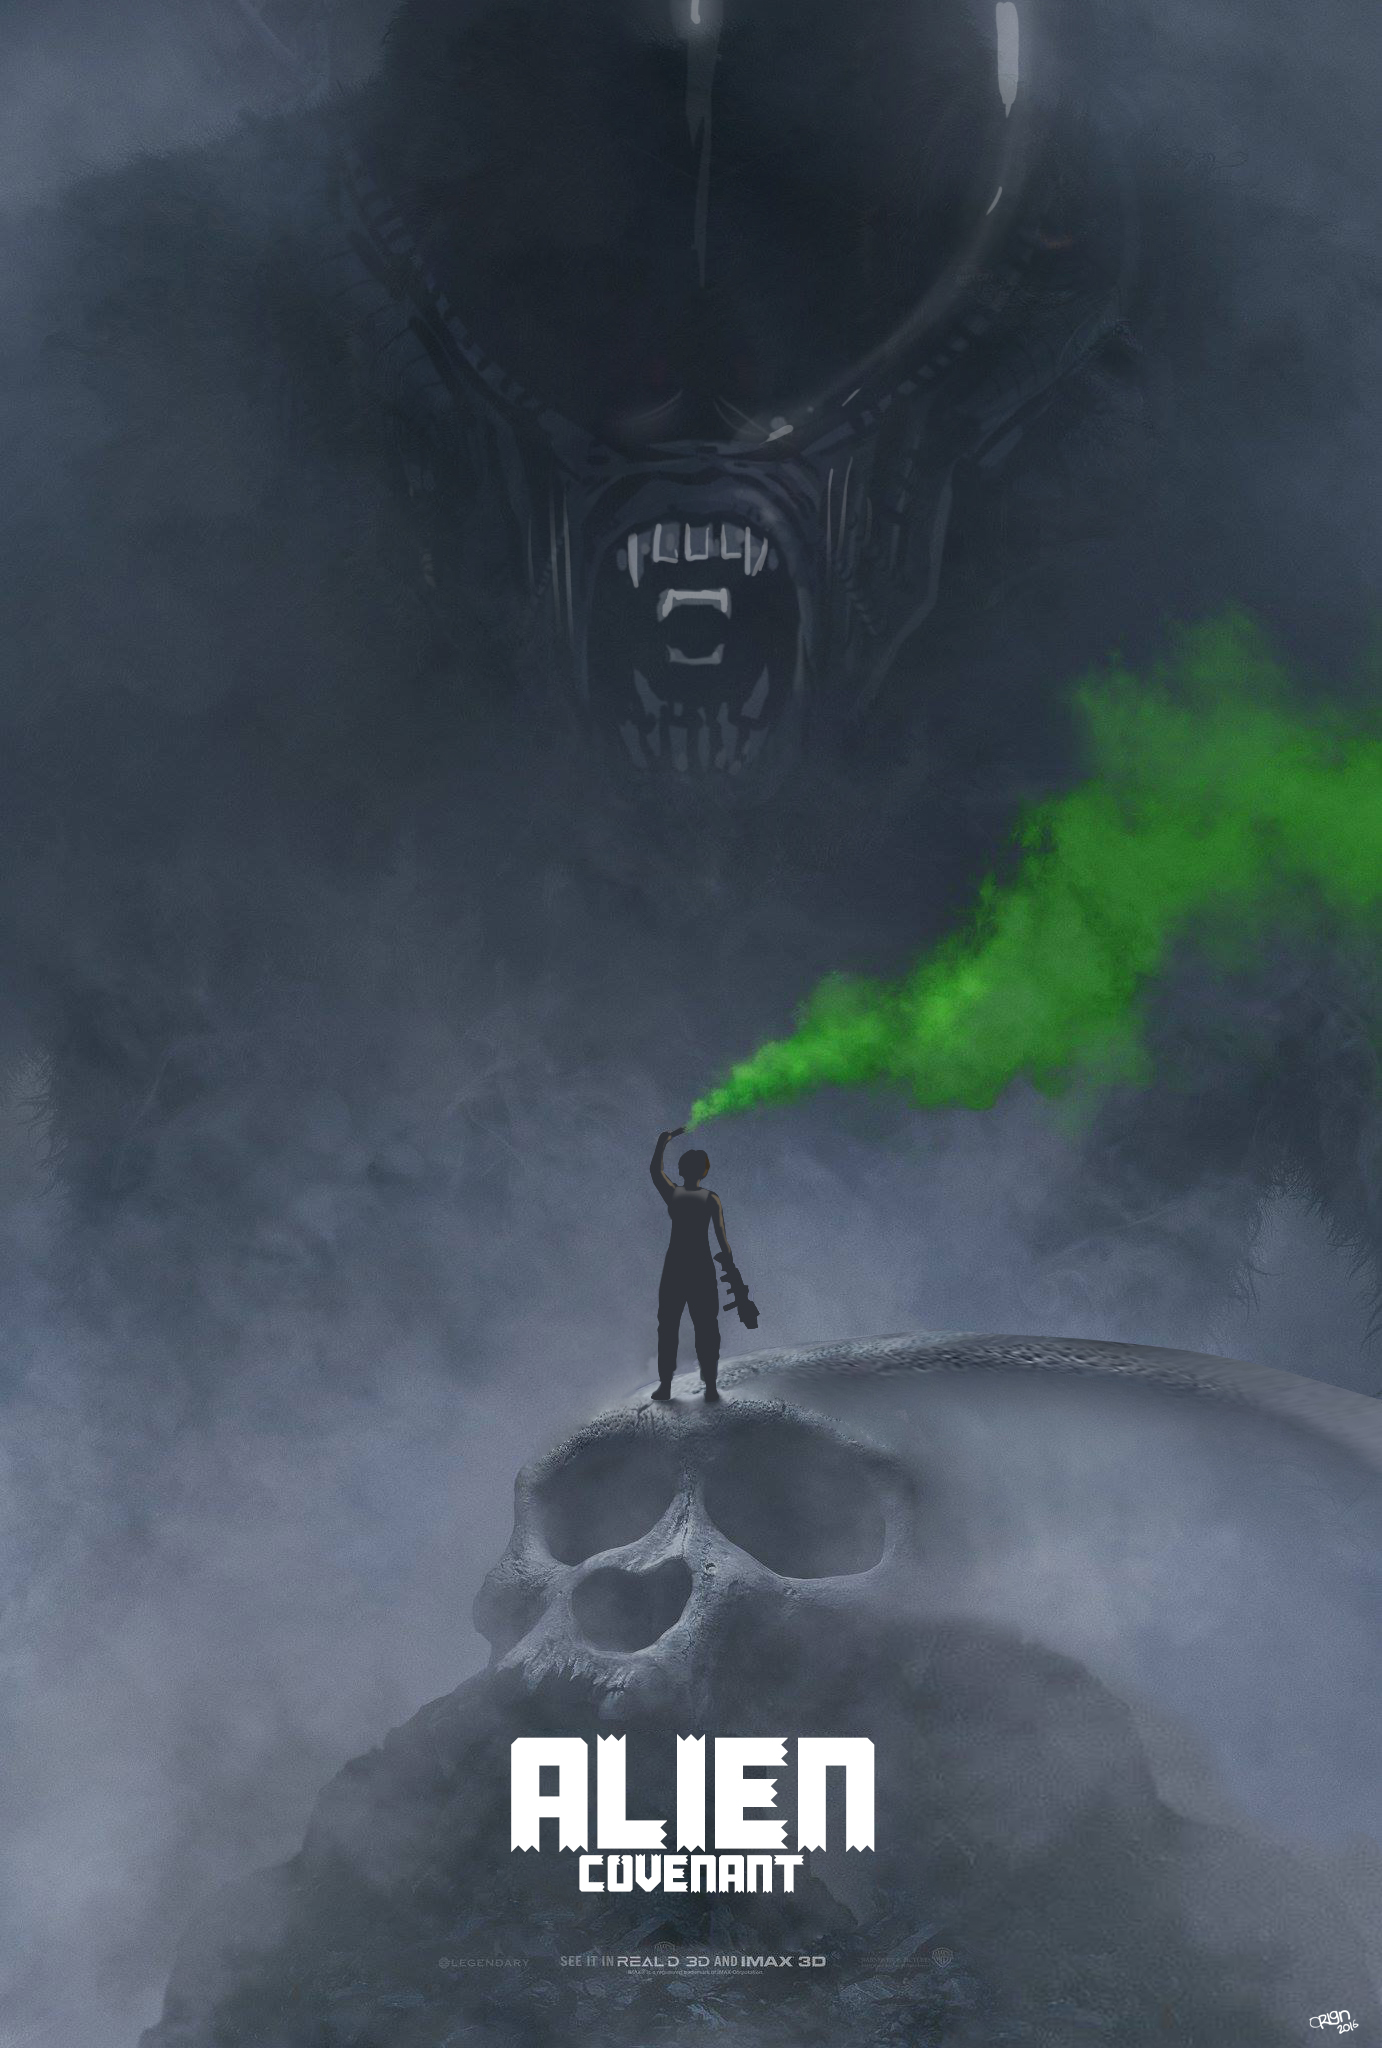 Kong Alien Covenant fan poster